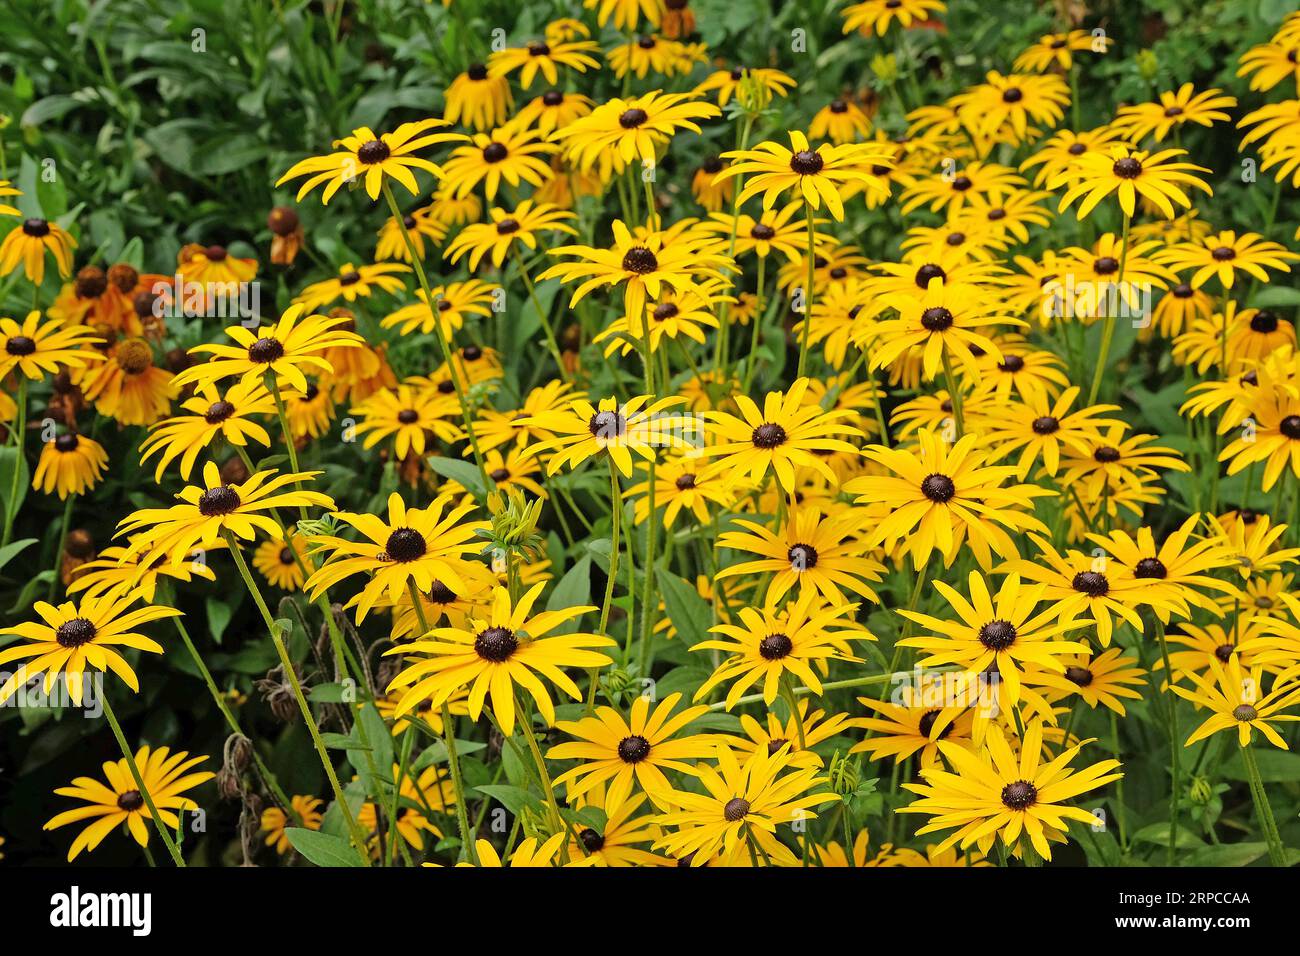 Gelbe Rudbeckia „Goldsturm“, auch bekannt als Black Eyed Susan, Gloriosa Daisy oder gelbes Ochsenauge in Blume. Stockfoto